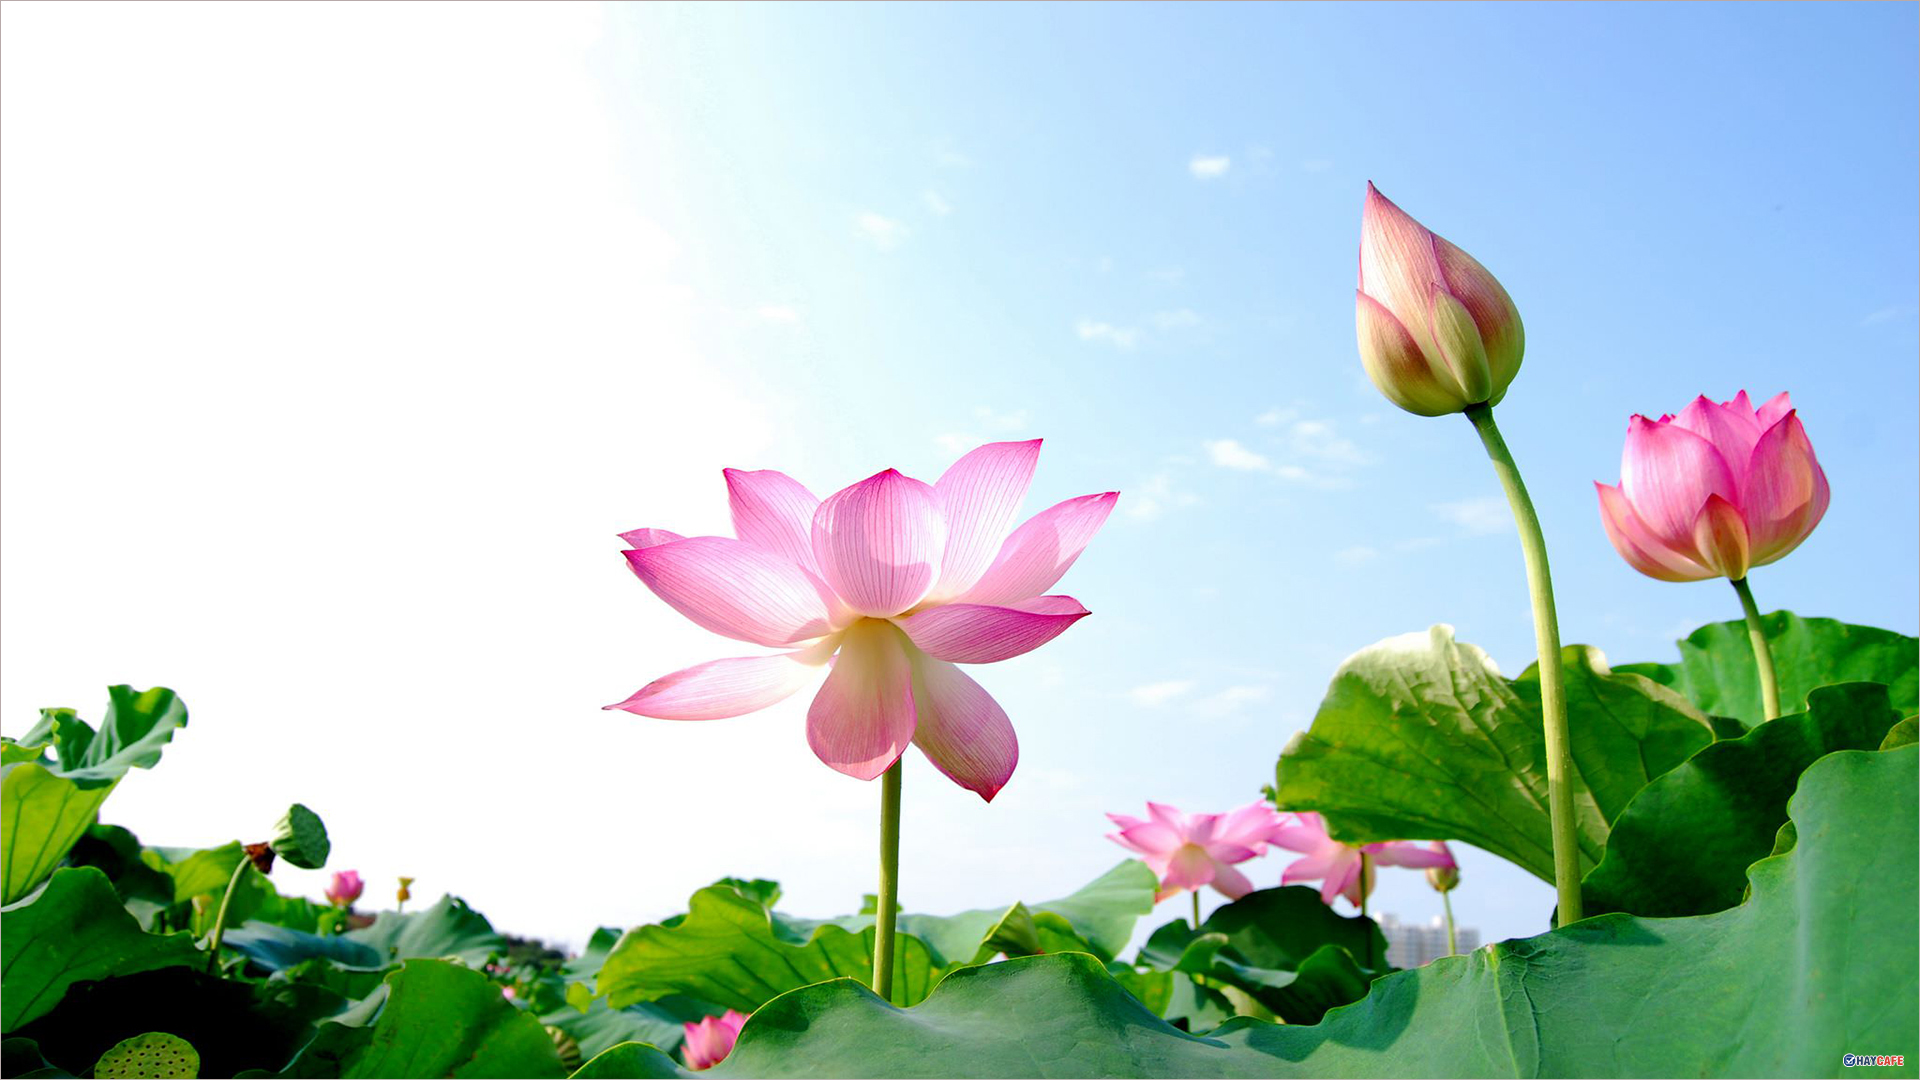 Hình ảnh nền hoa Sen đẹp, chất lượng cao - Trường THPT Vĩnh Thắng